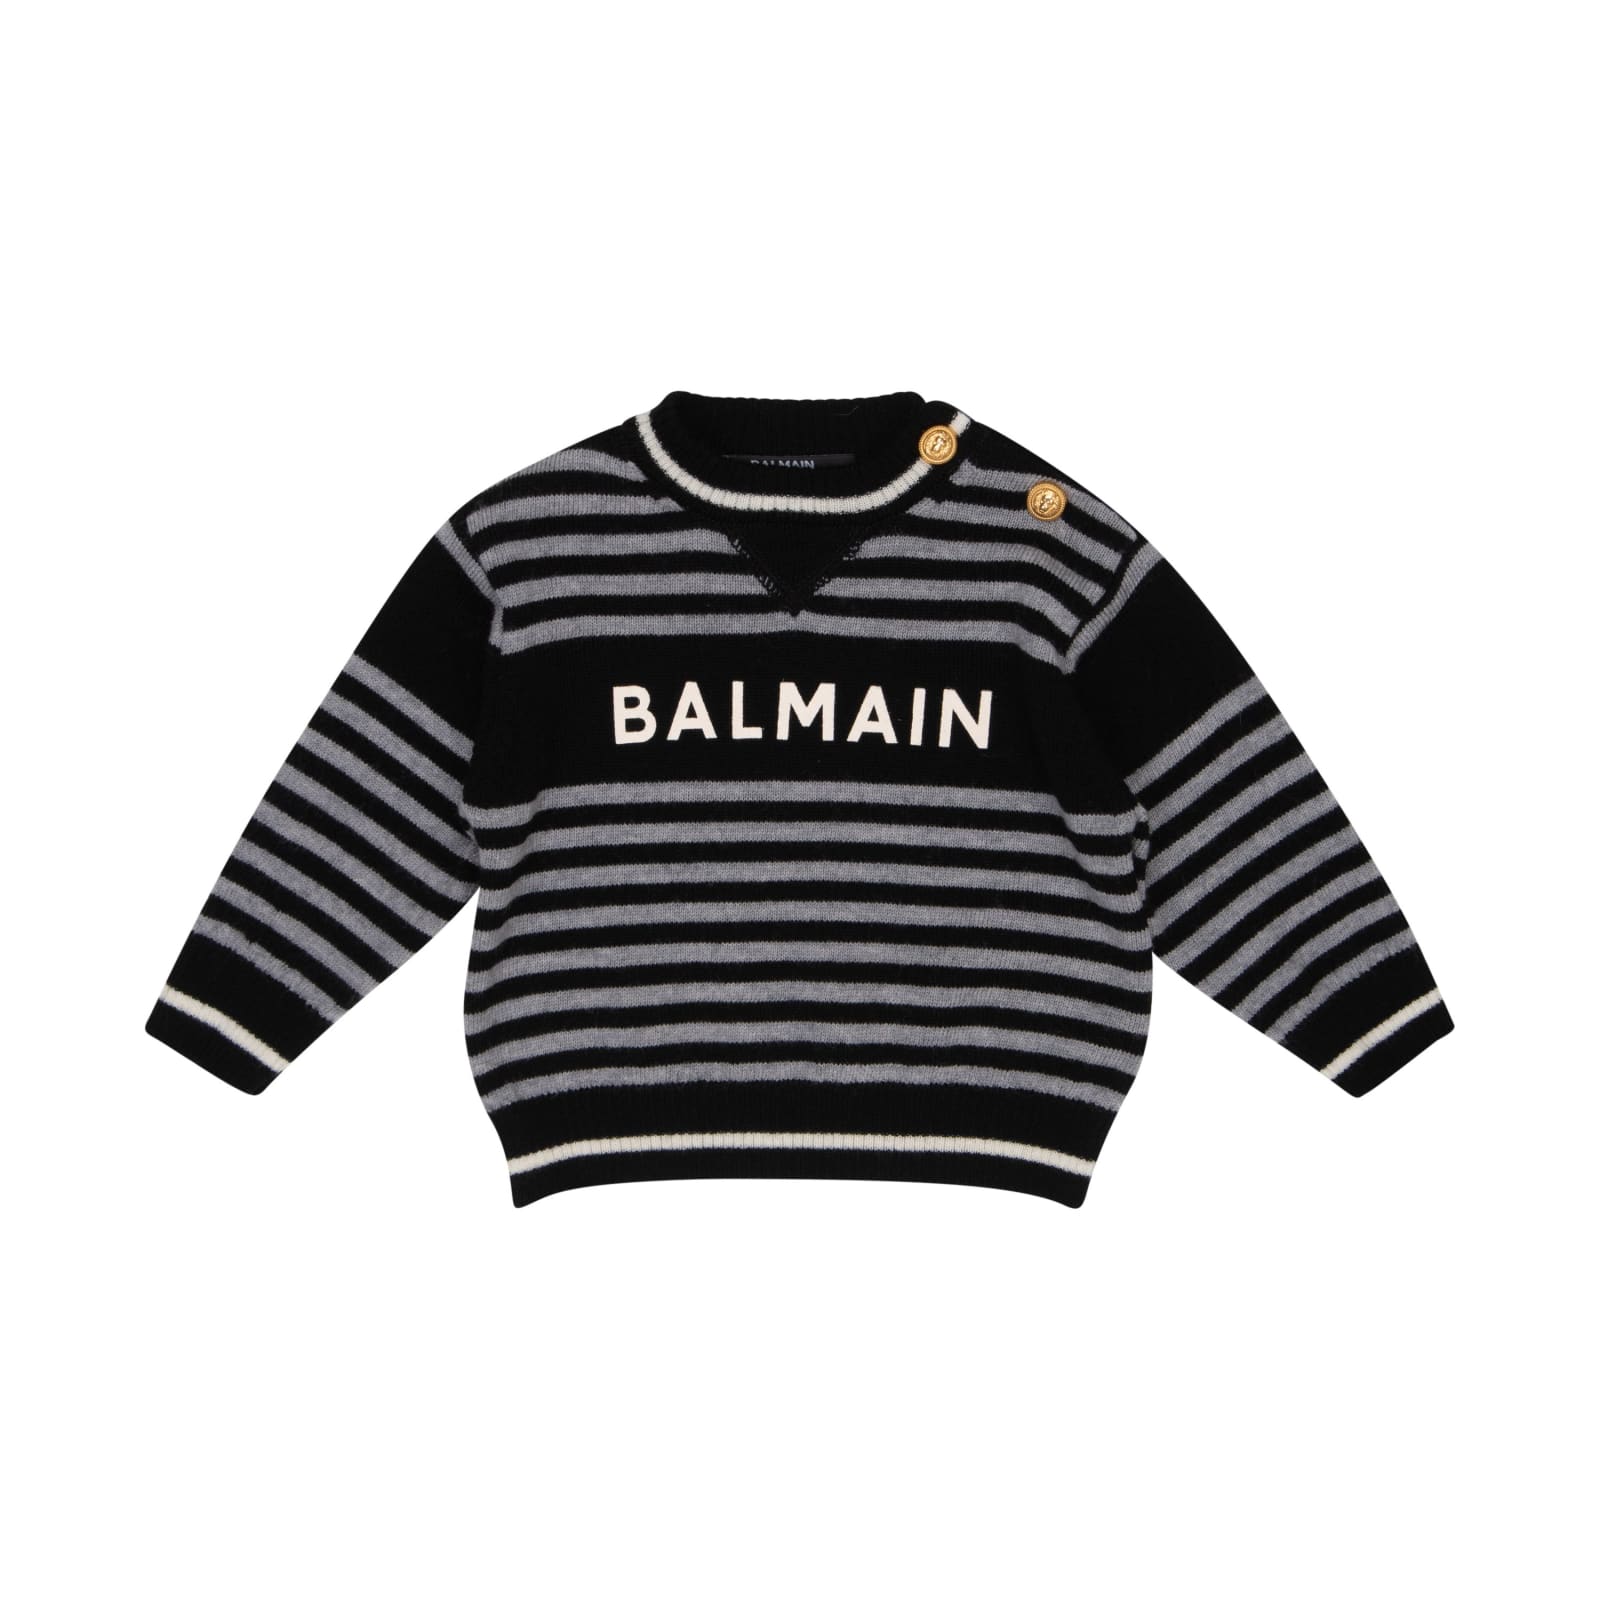 Balmain Babies' Printed Sweater In Black/grey